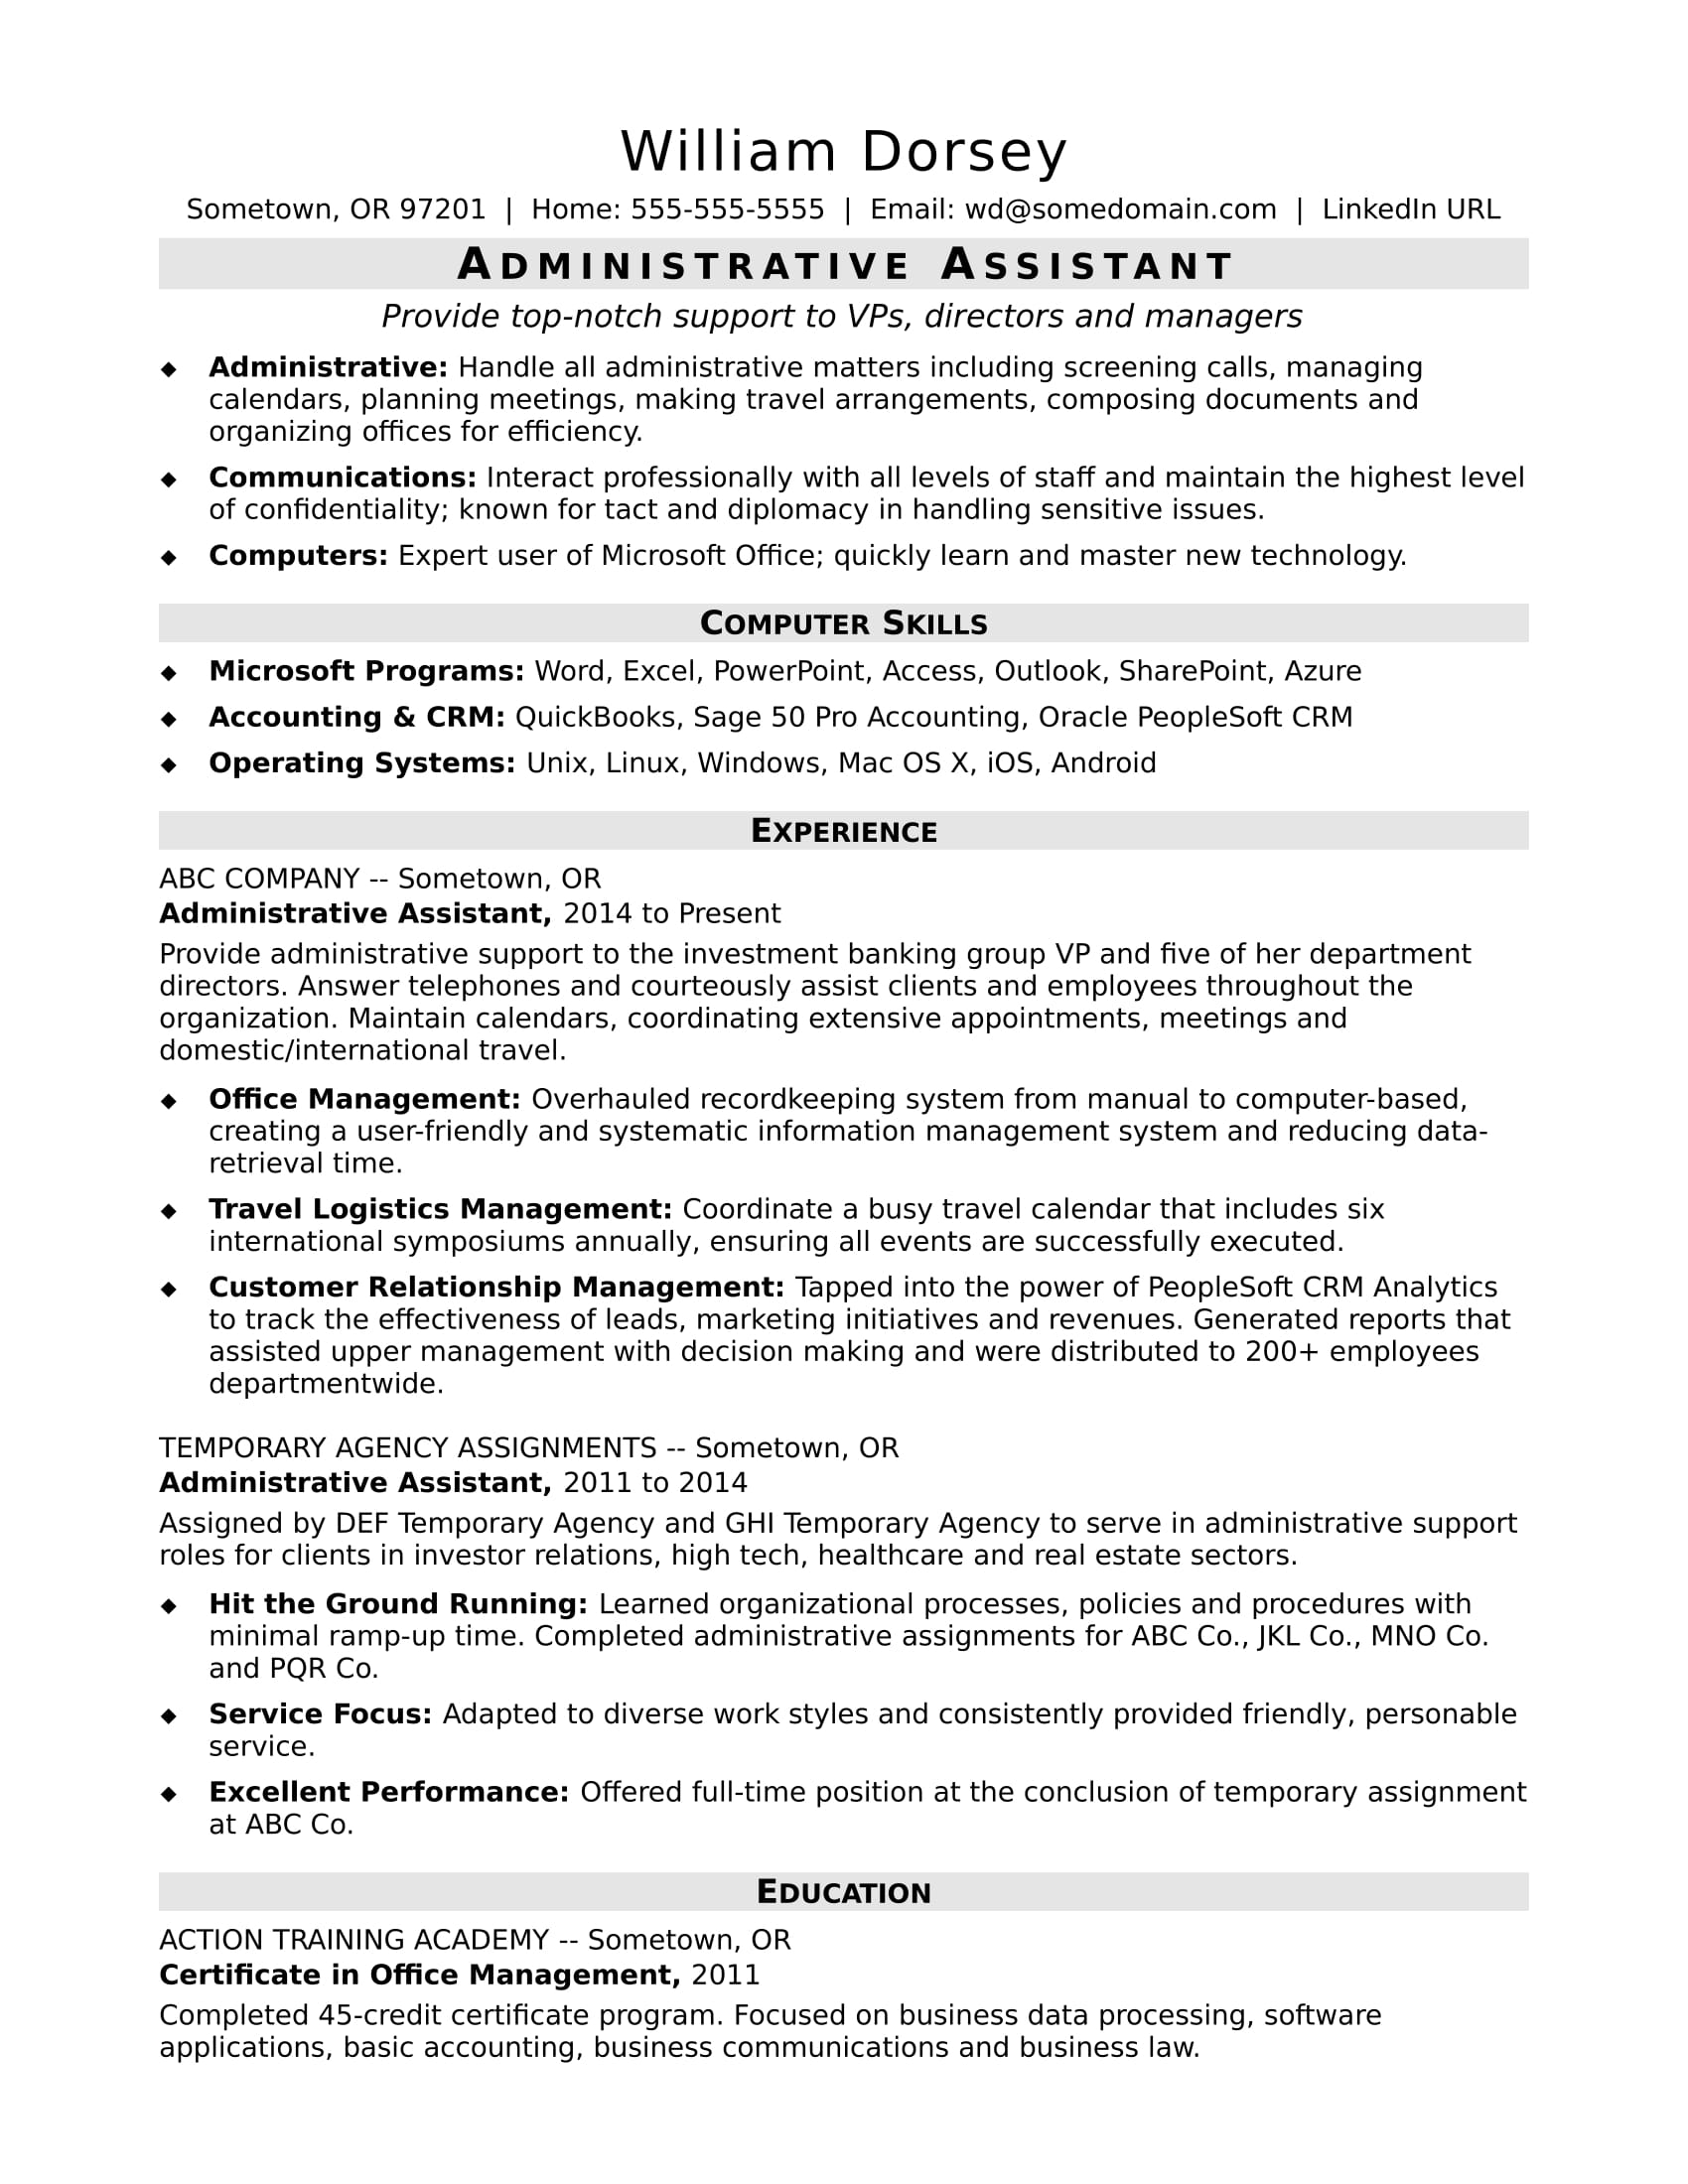 midlevel administrative assistant resume sample monster com